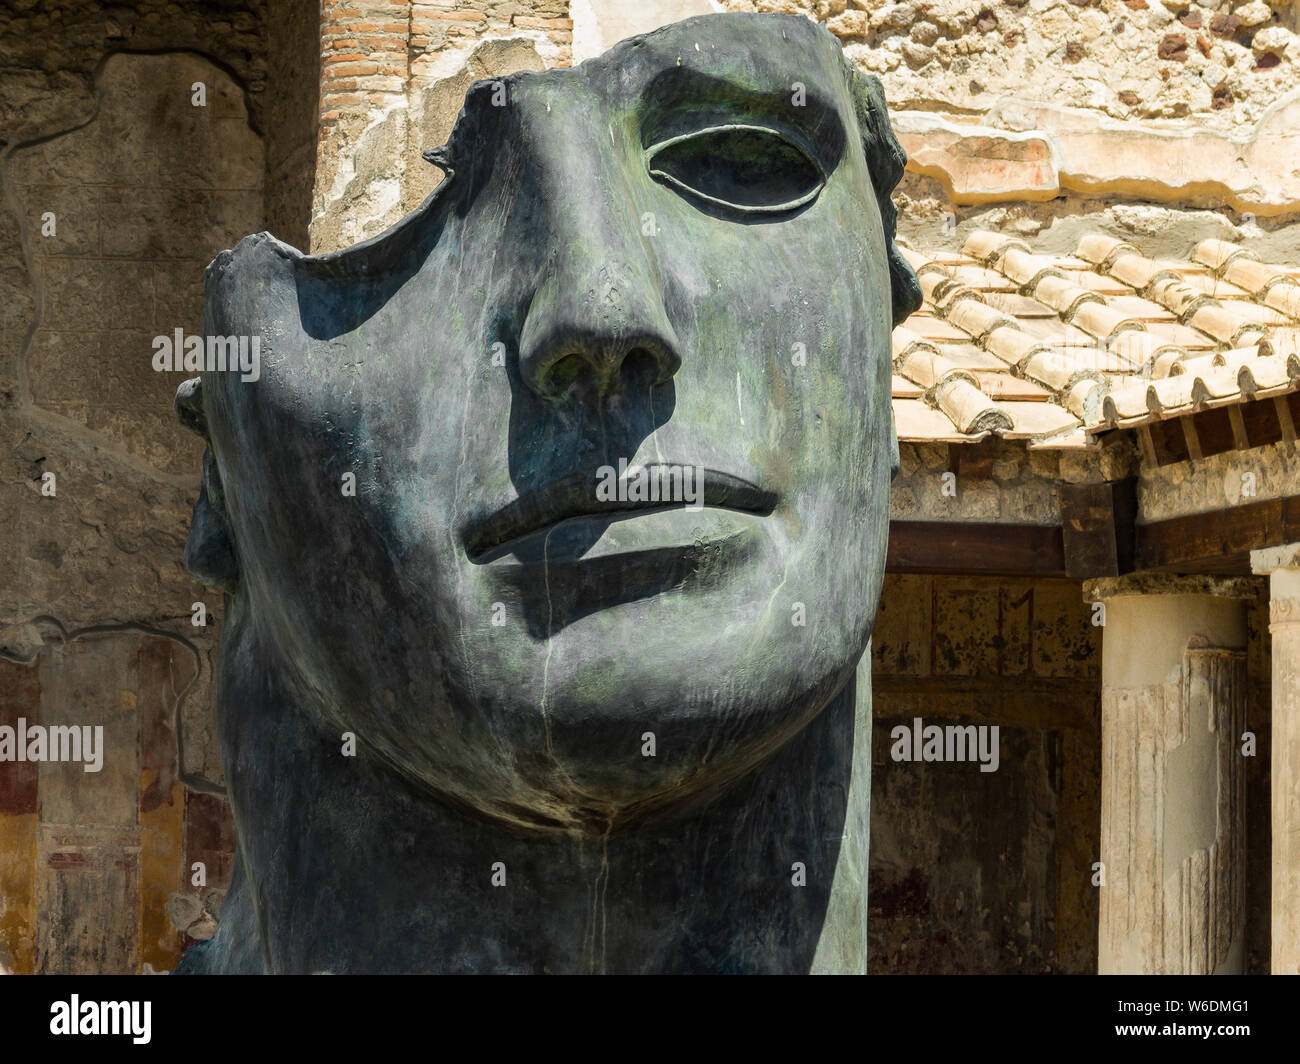 Statue en bronze d'un visage humain à Pompéi Banque D'Images